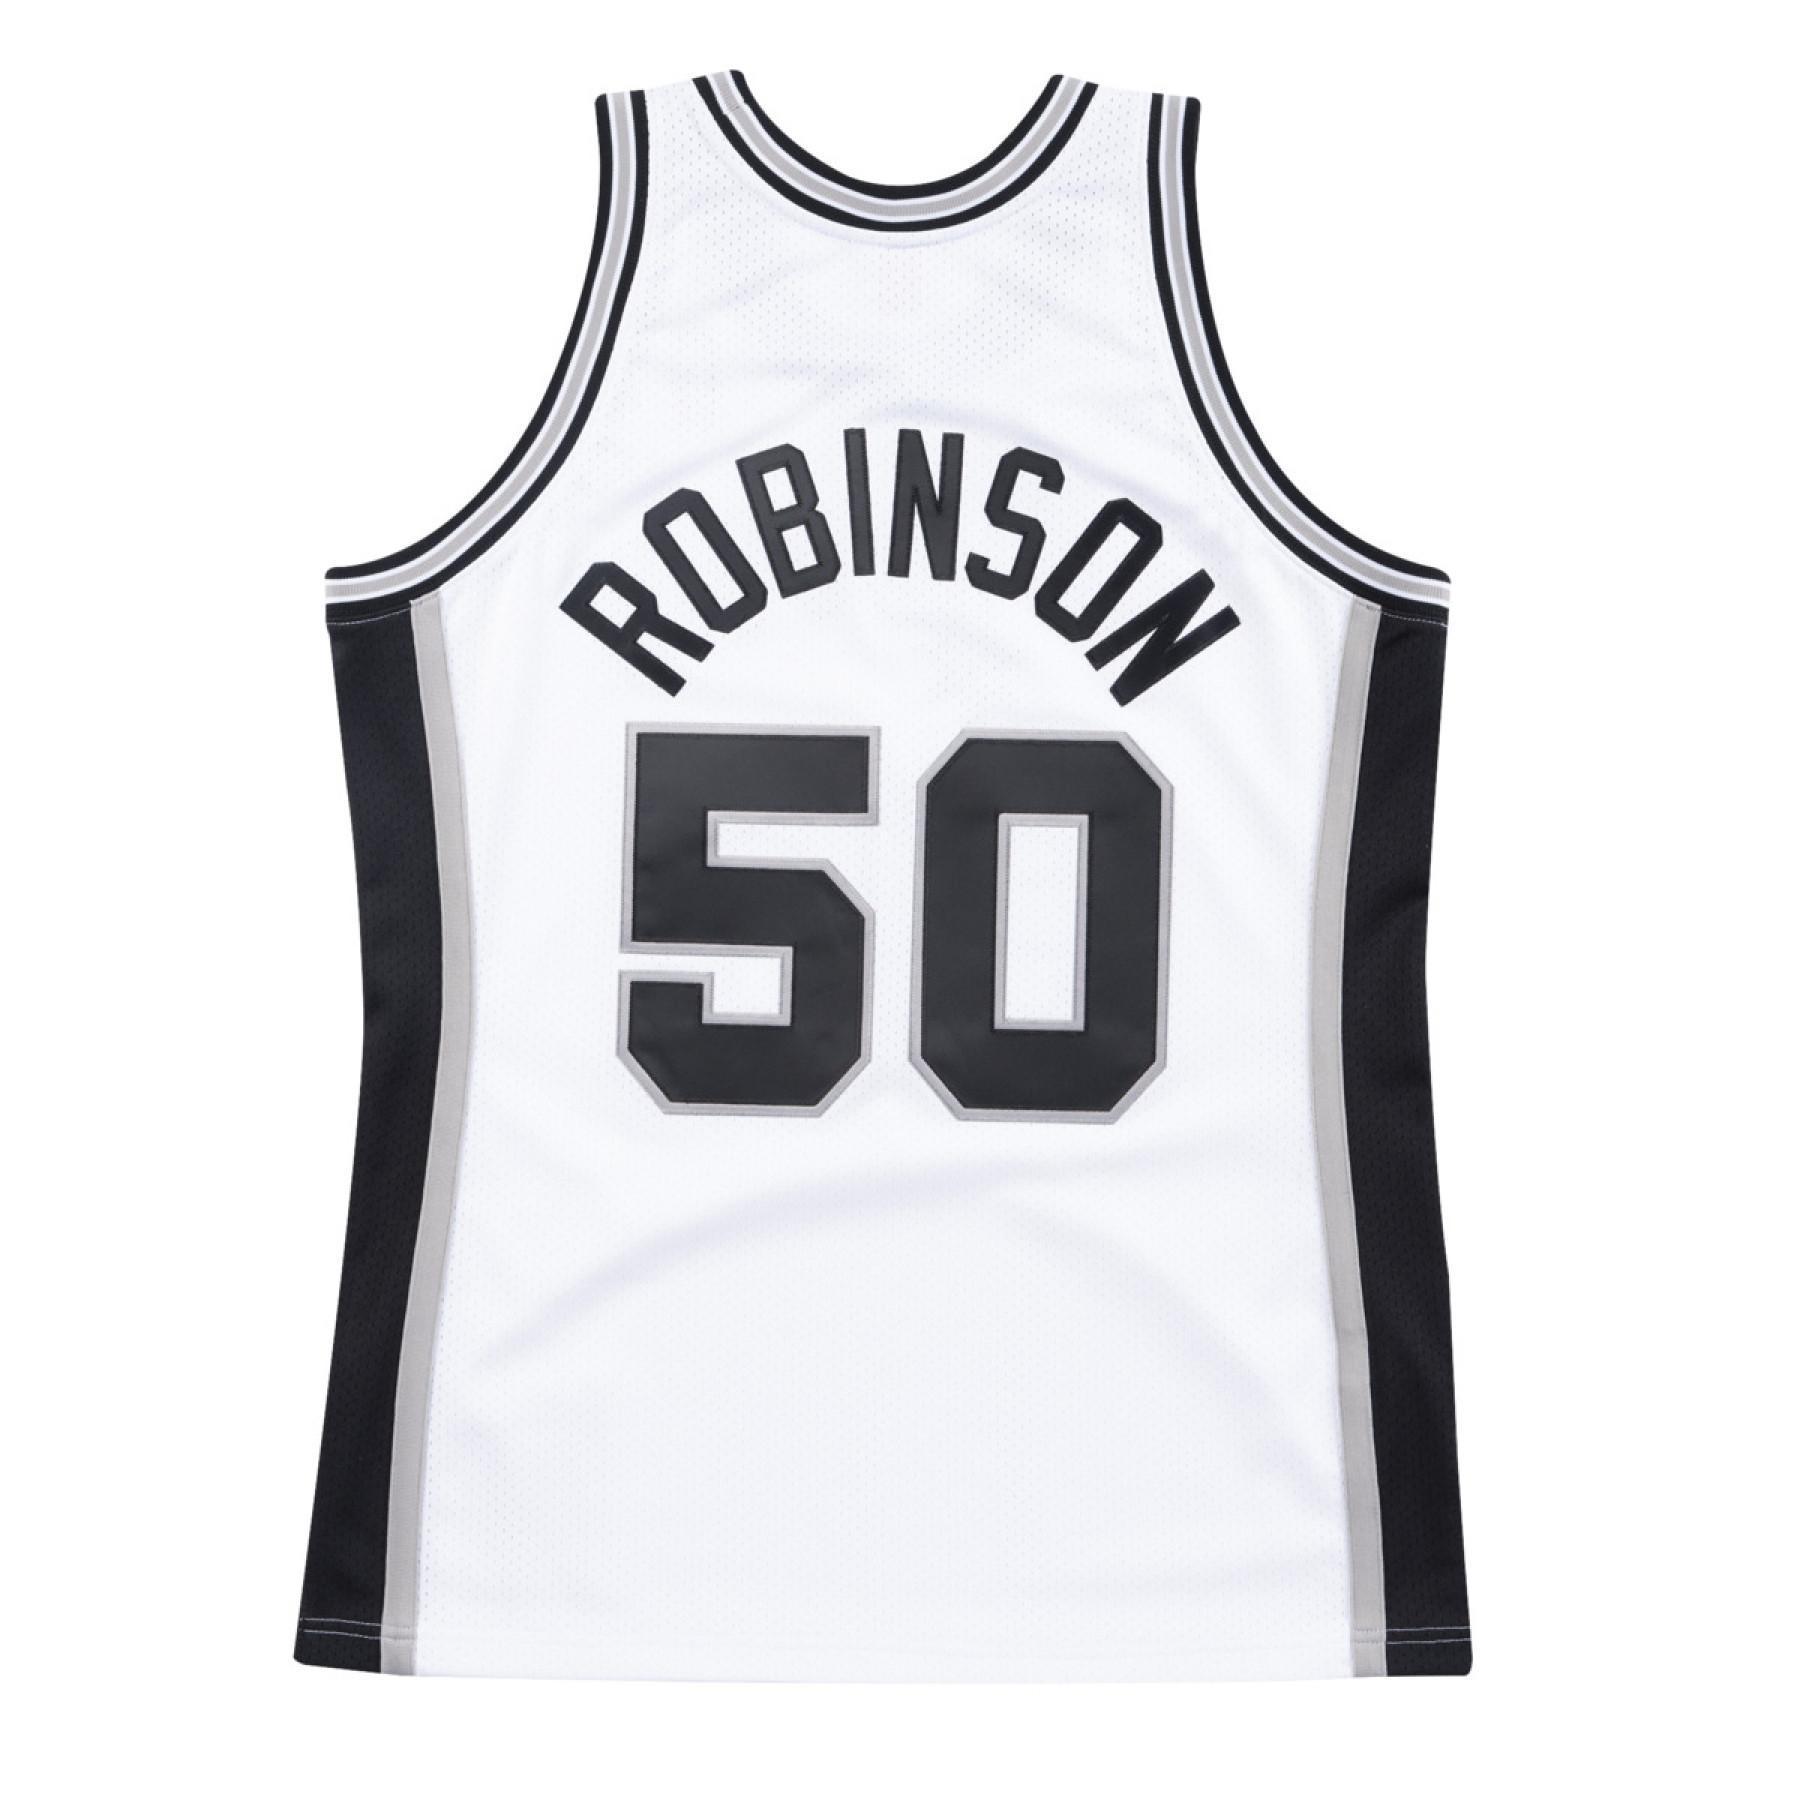 Camiseta de casa San Antonio Spurs finals David Robinson 1998/99